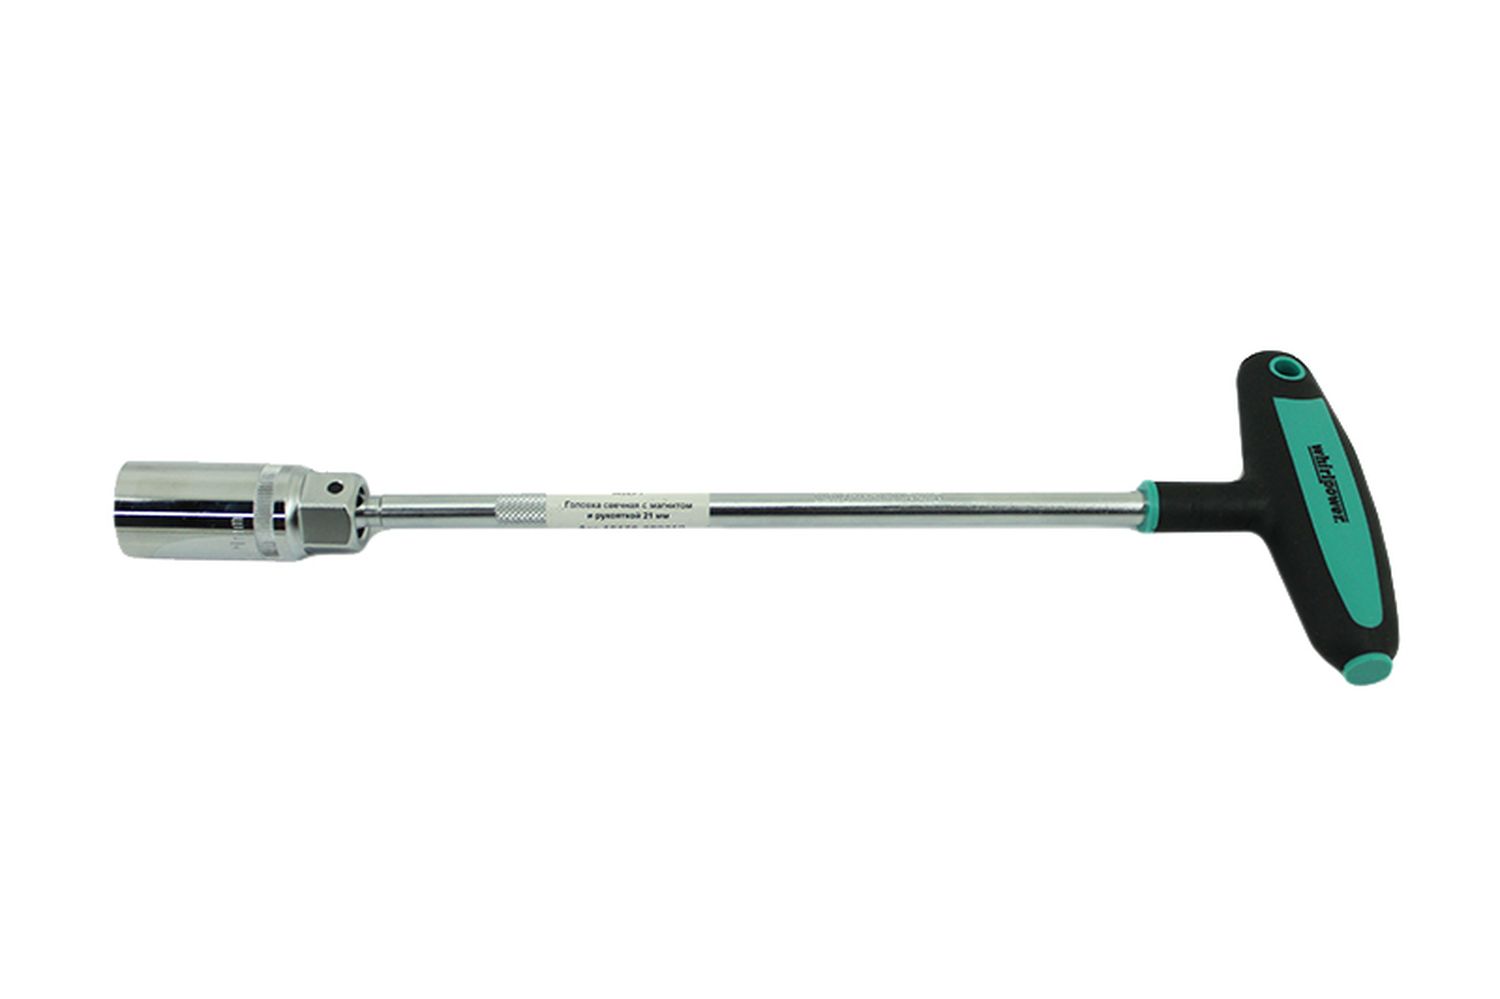 Ключ WhirlPower свечной с магнитом и рукояткой 21мм фотография №1